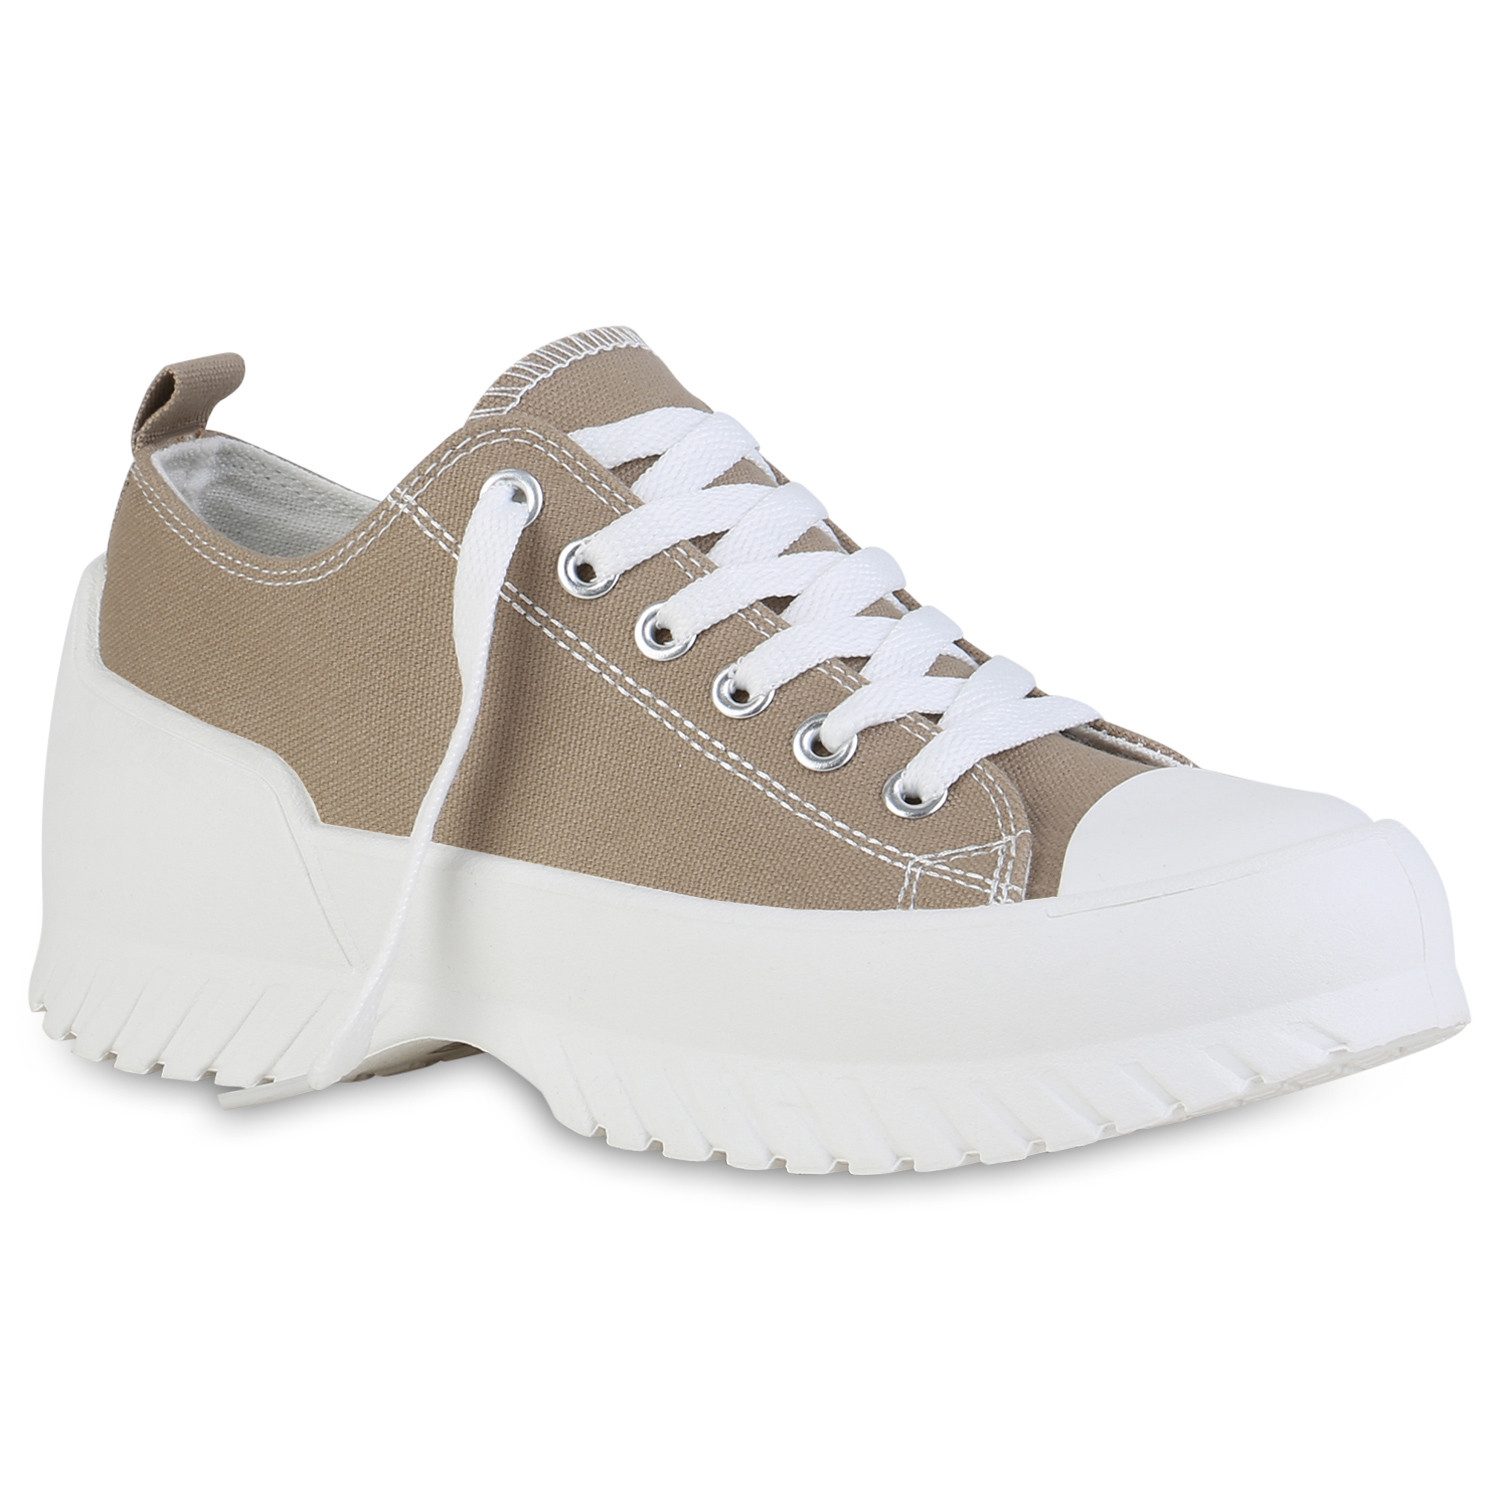 VAN HILL 840265 LS 8-26[LS] Damen Sneaker Sneaker Schuhe